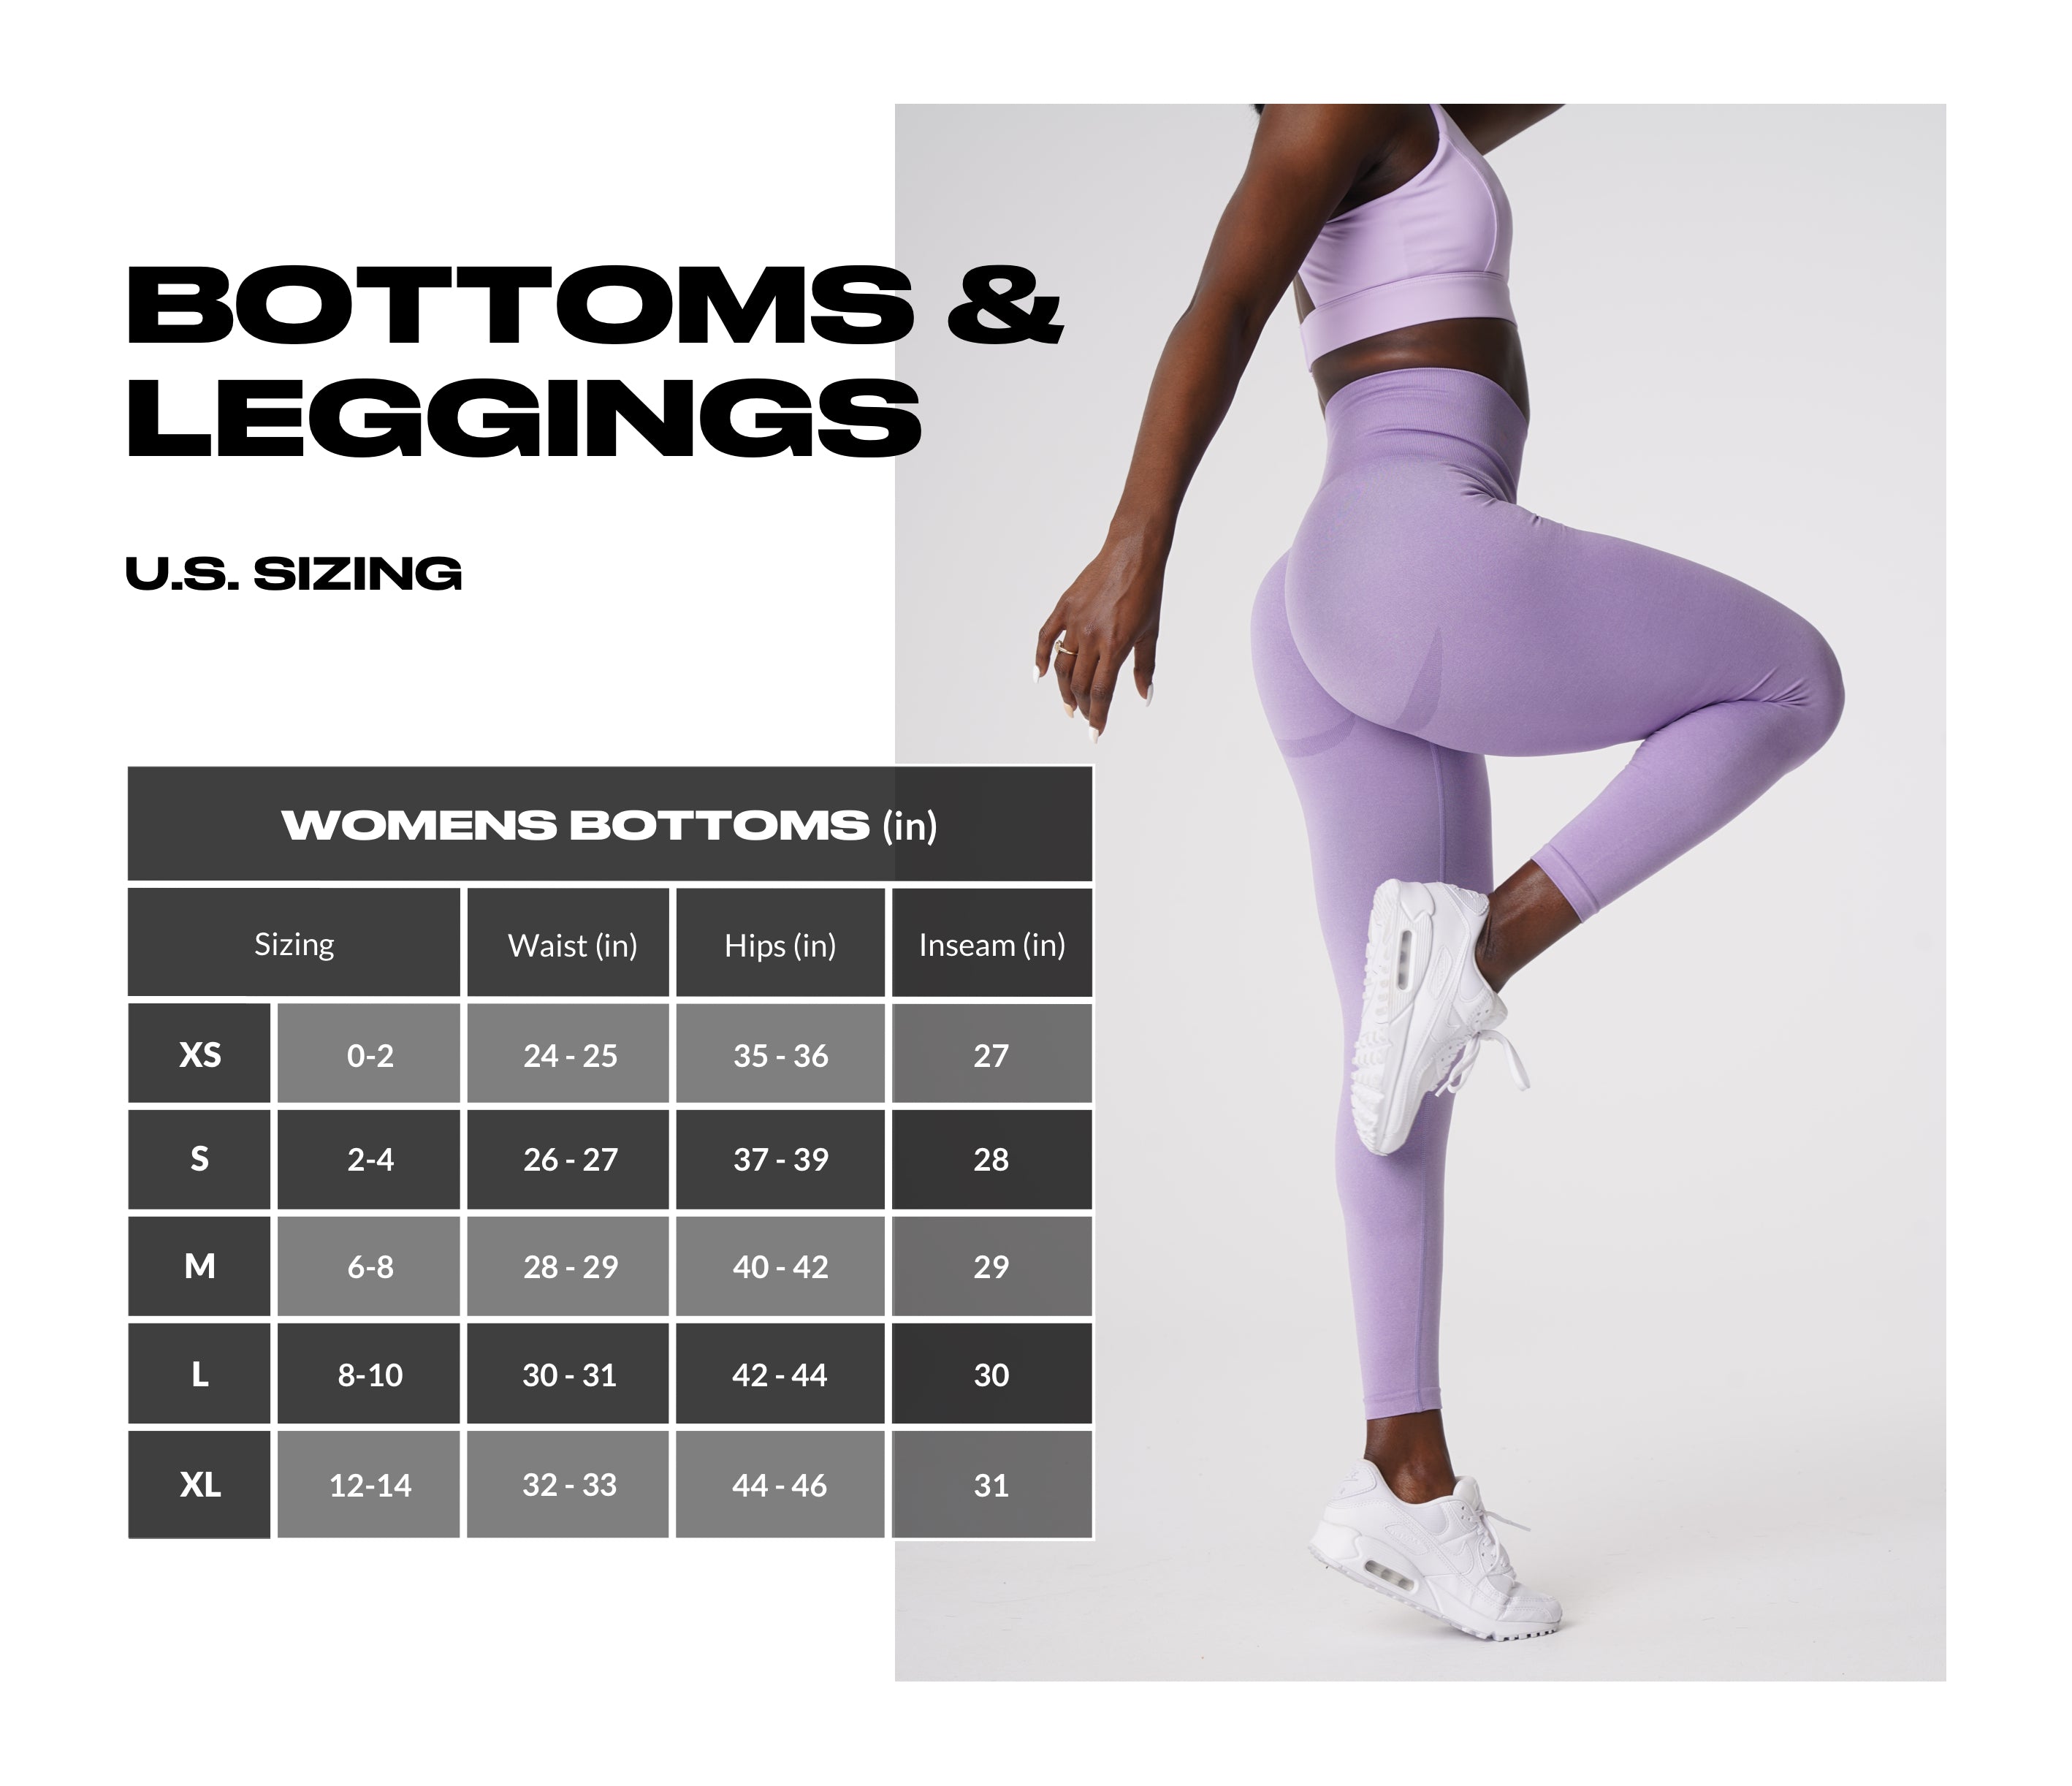 Girls' Clothing Size Chart. Nike.com